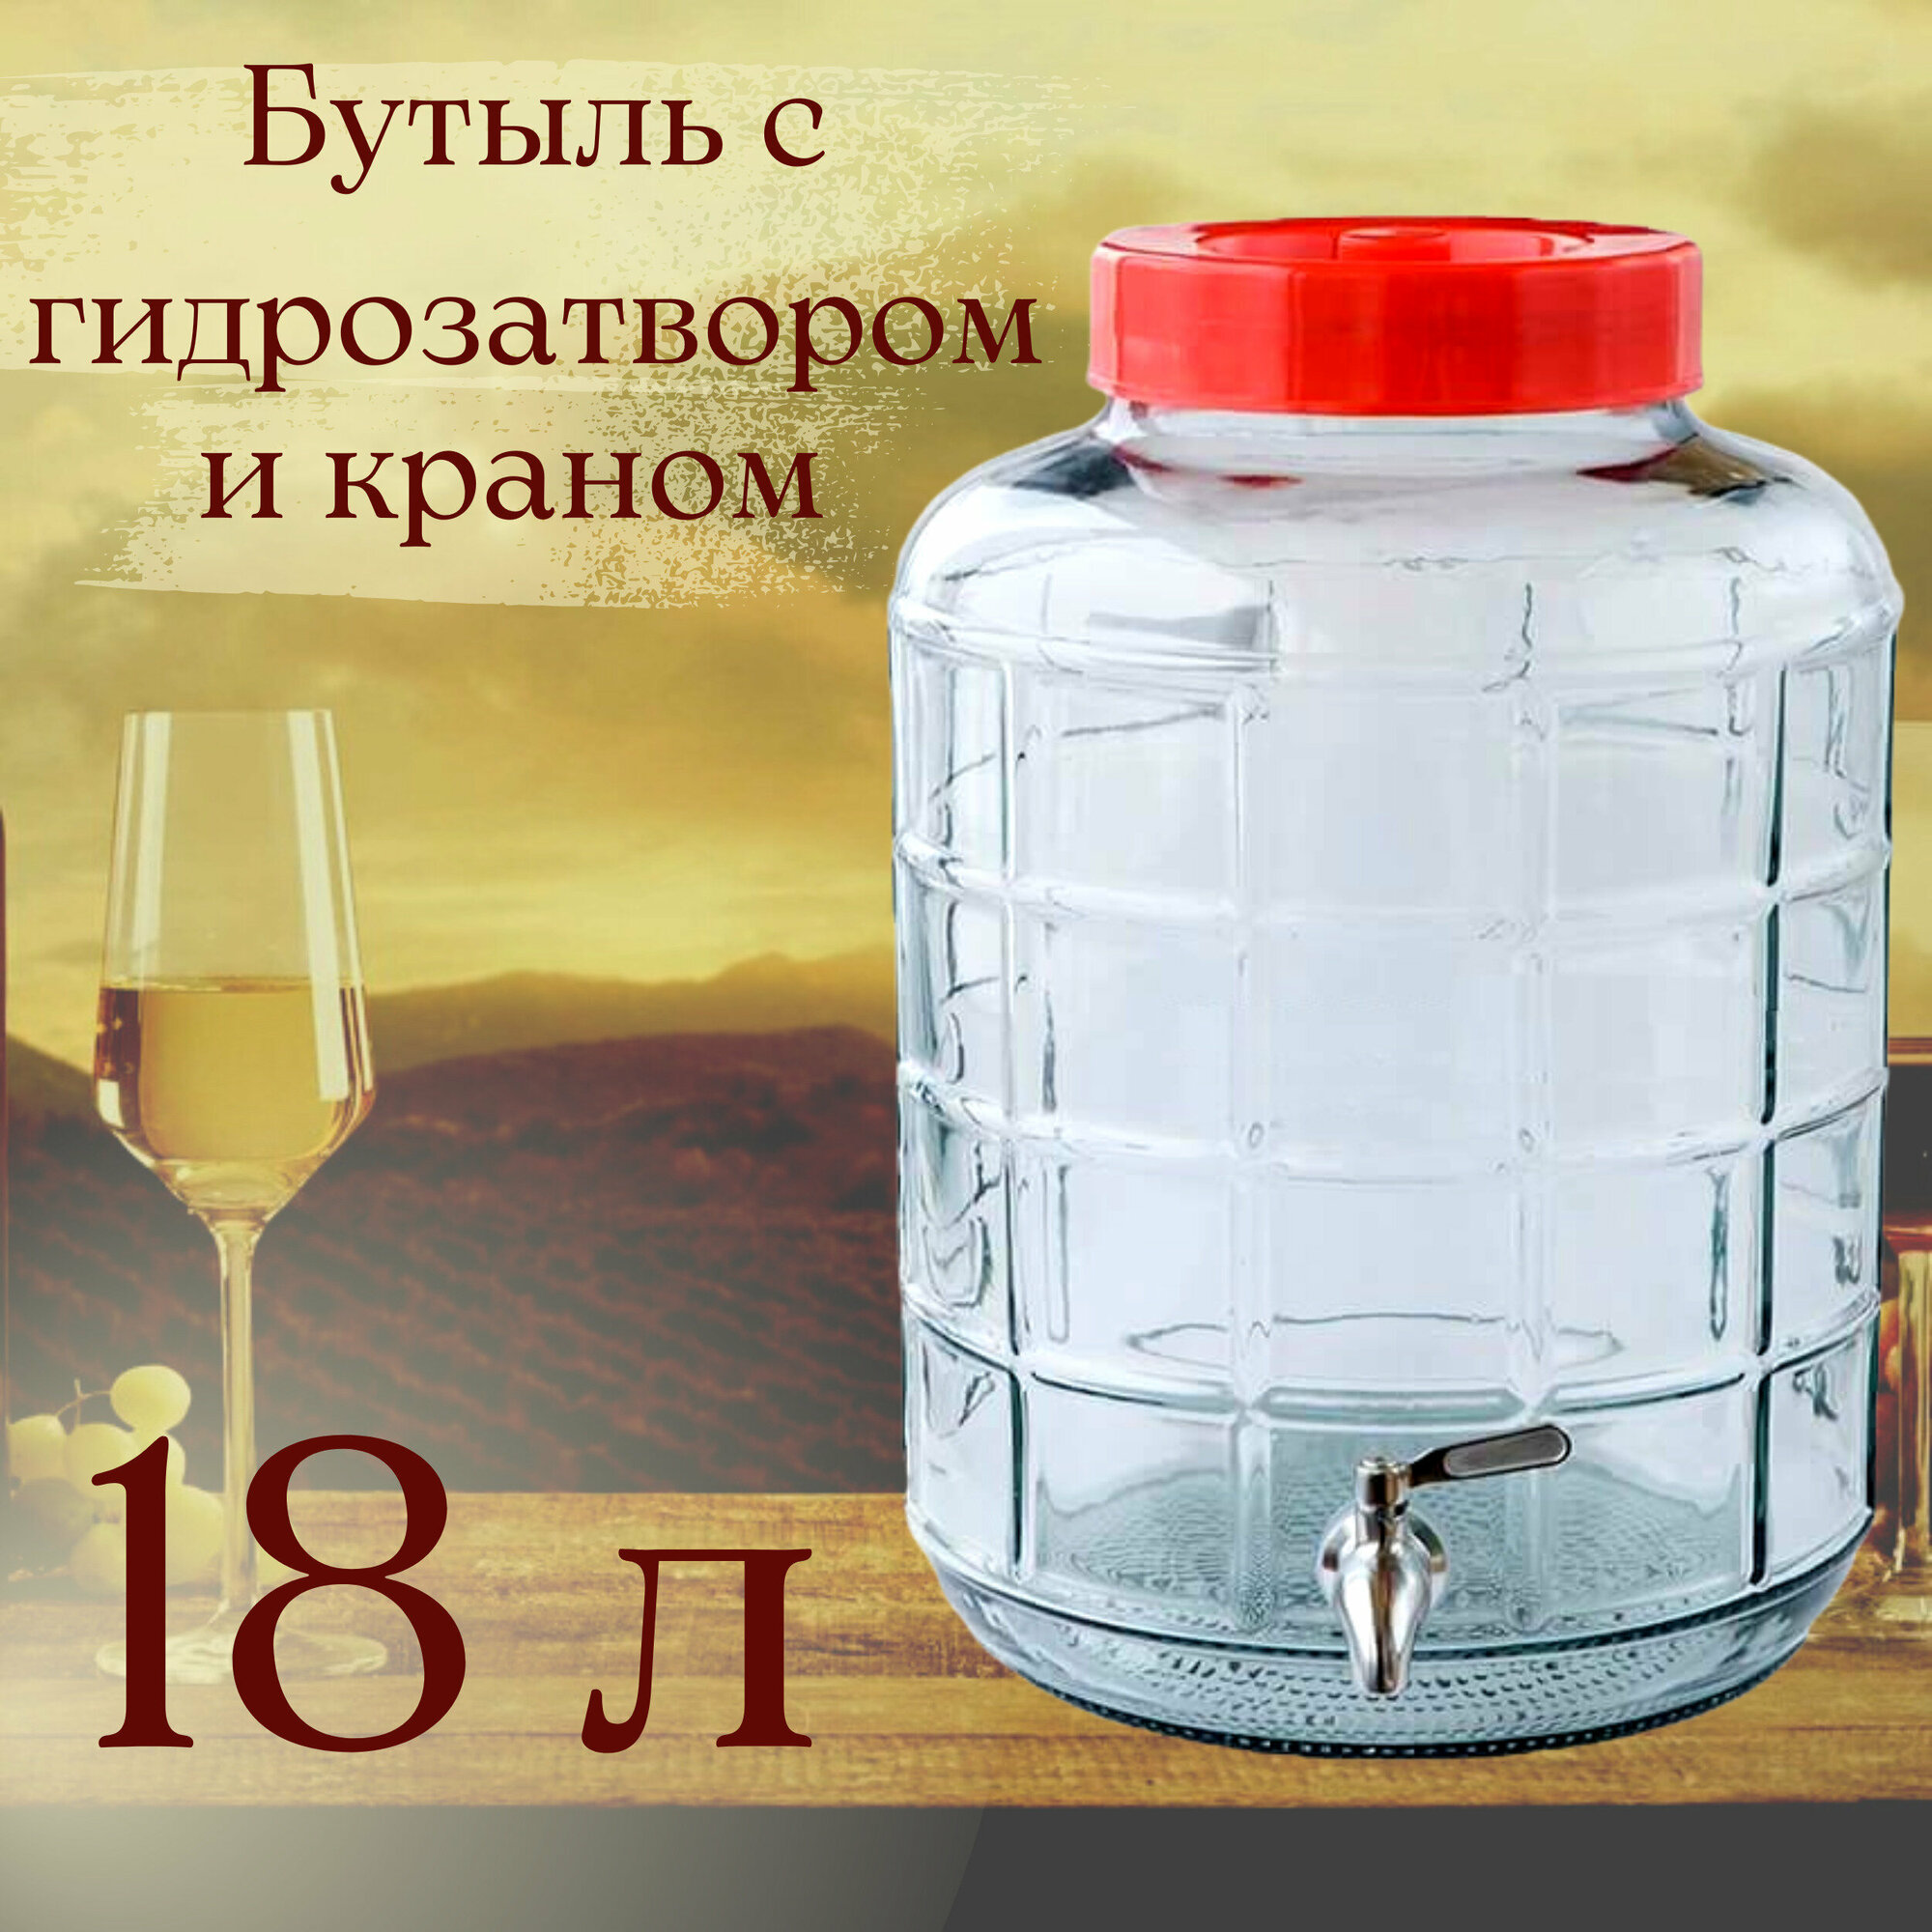 Бутыль (емкость, банка) стеклянная для браги, вина 18 л с крышкой-гидрозатвором и краном